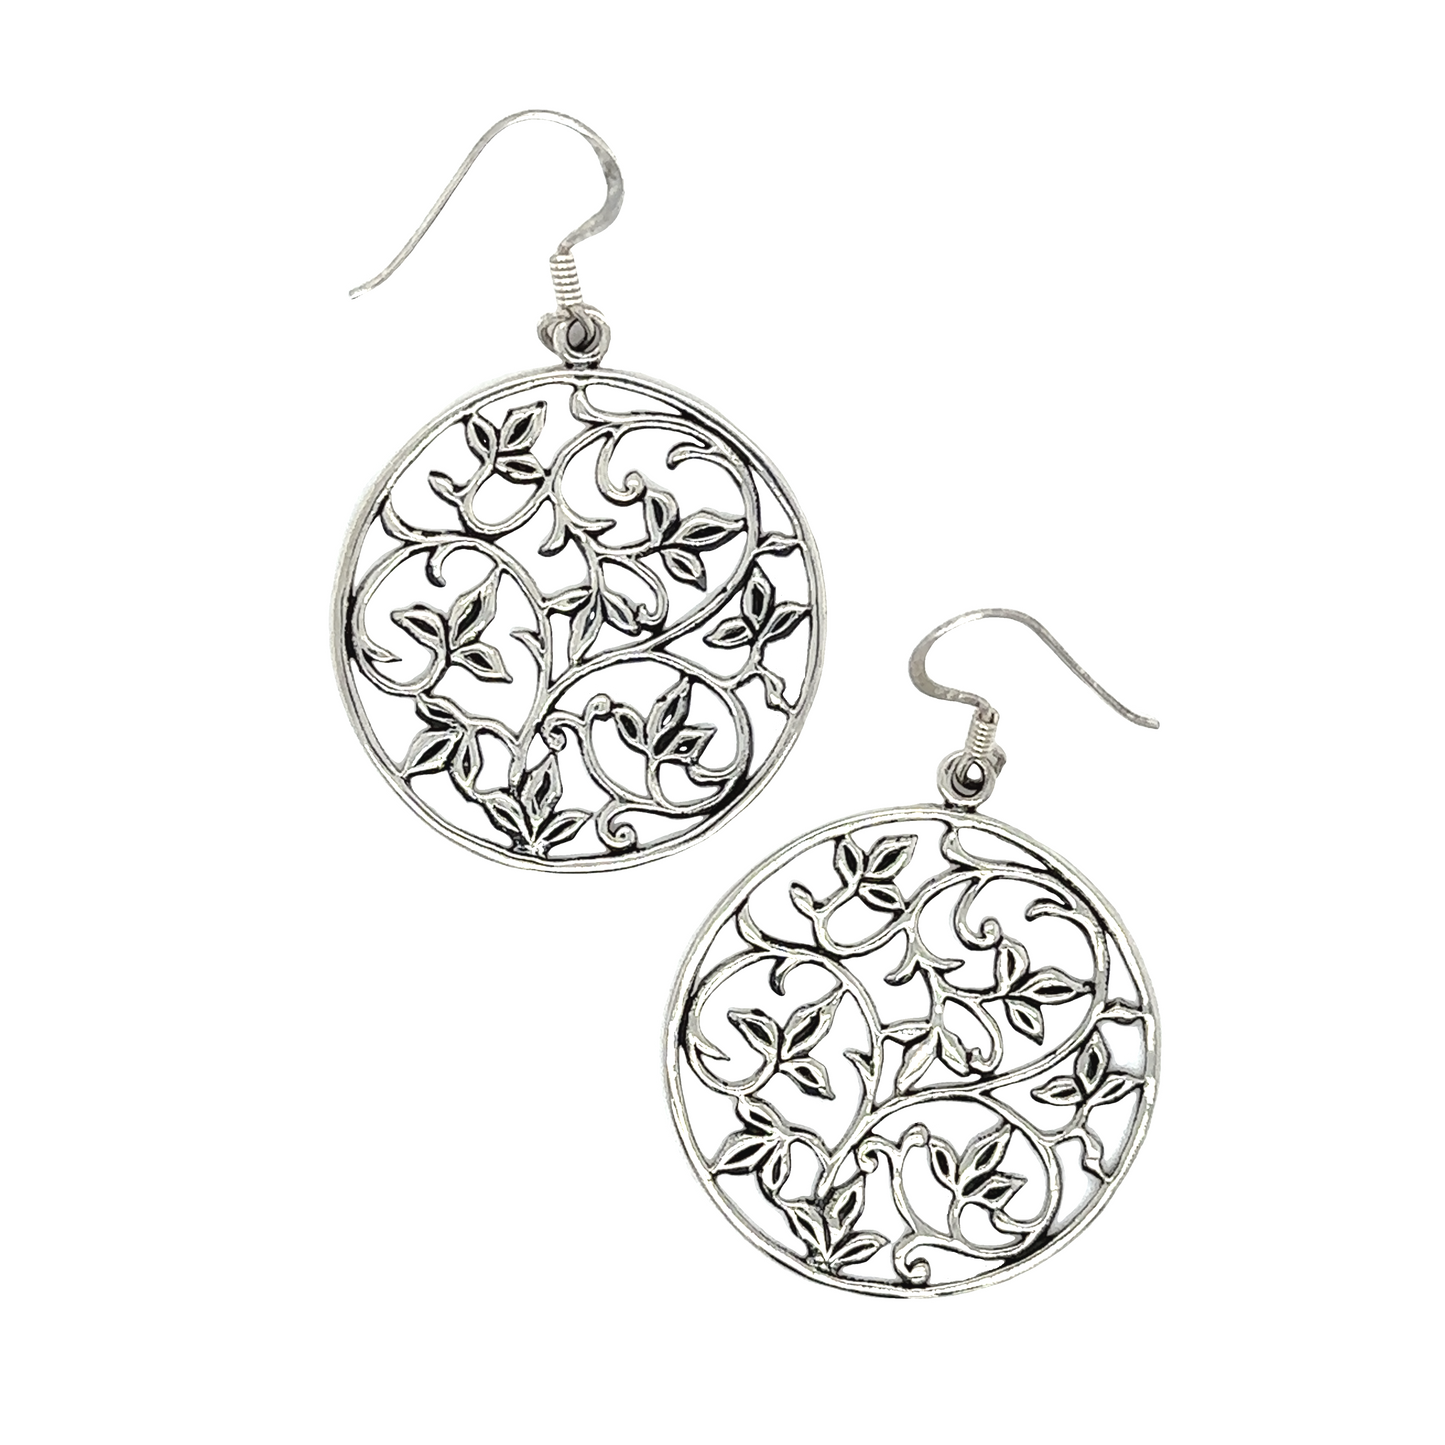 A pair of Super Silver Open Vine Pattern Earrings.